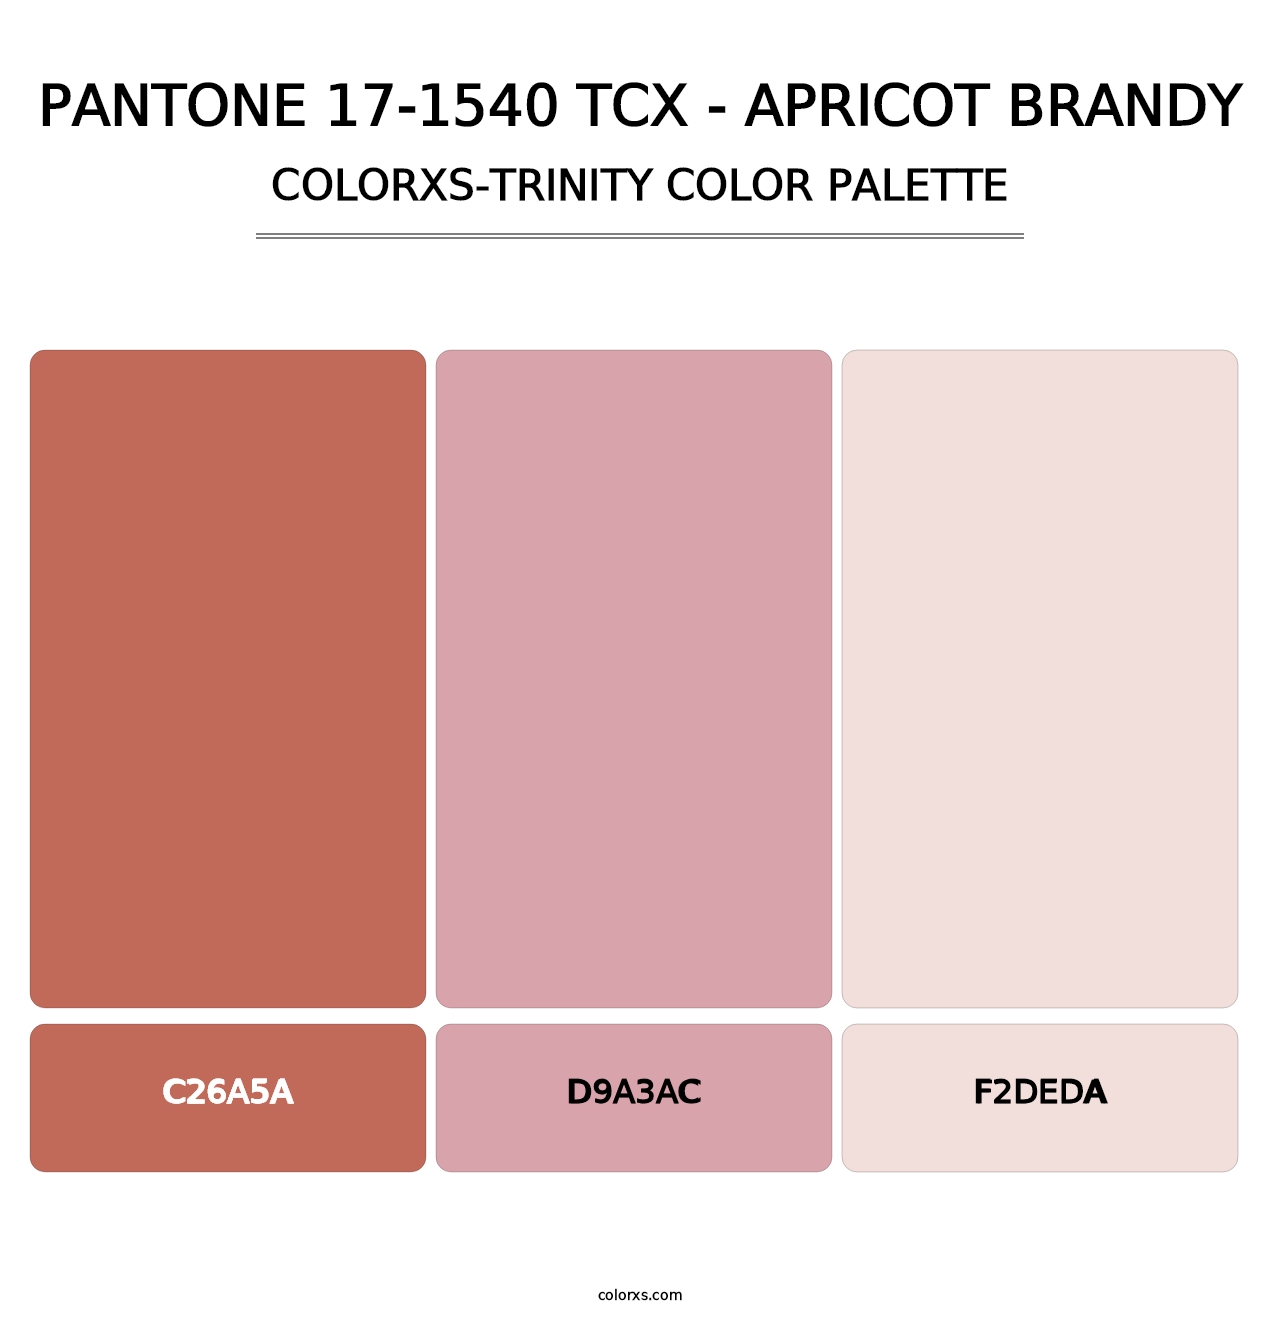 PANTONE 17-1540 TCX - Apricot Brandy - Colorxs Trinity Palette